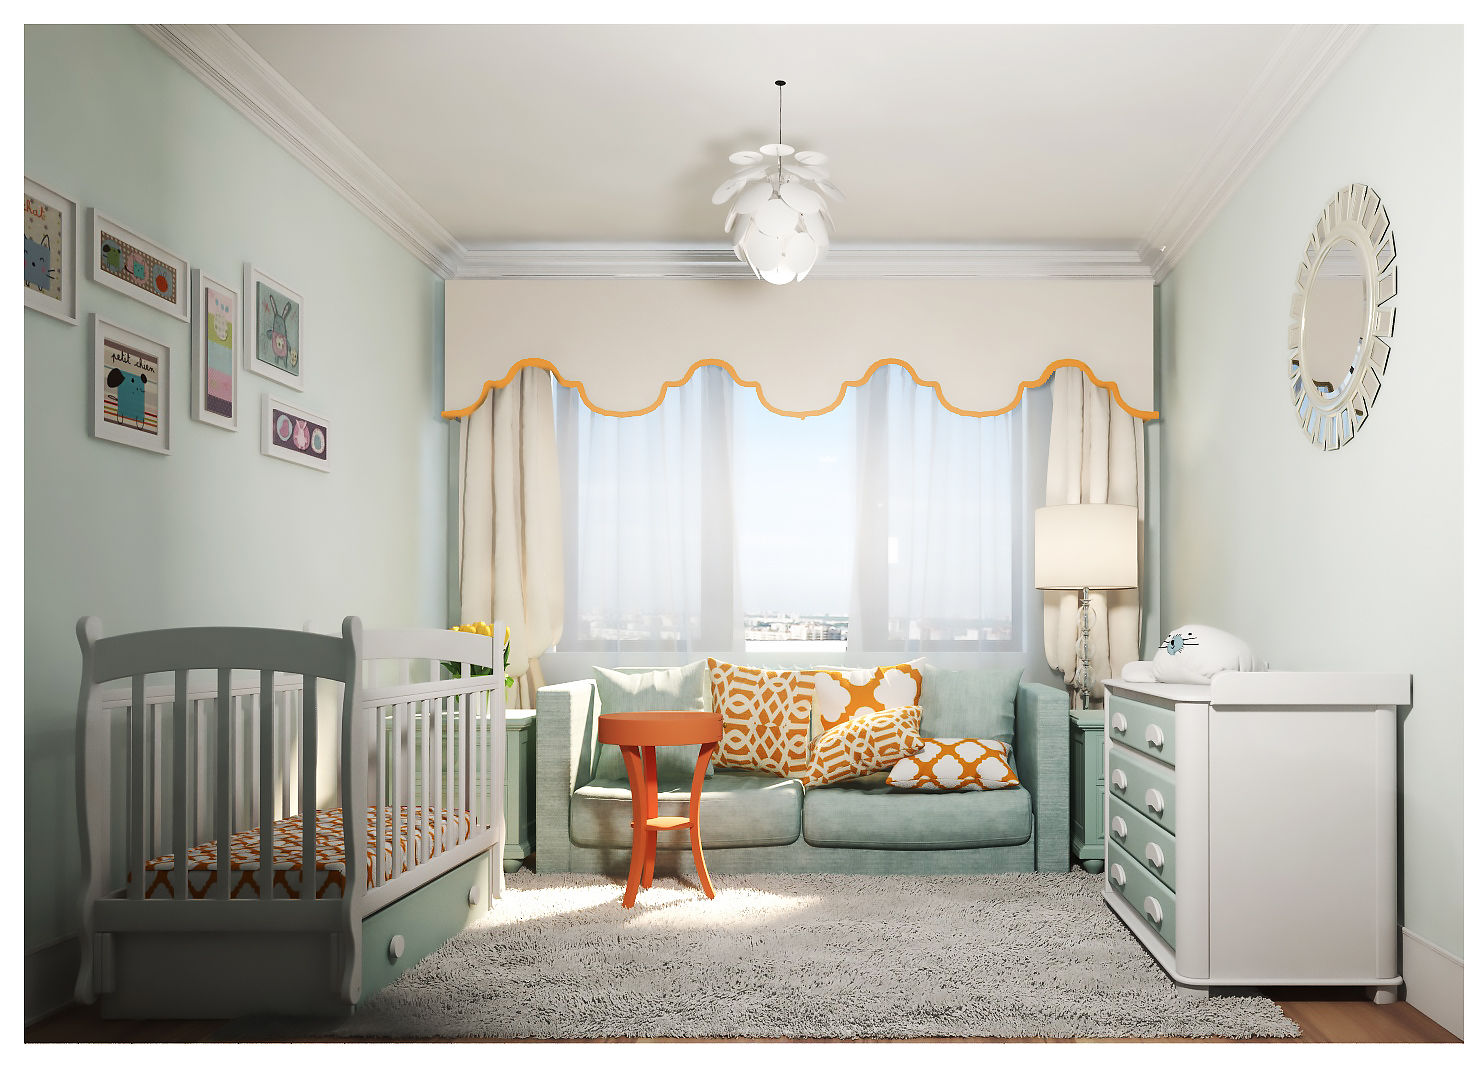 3-bedroom Apartment, Moscow , Alexander Krivov Alexander Krivov غرفة الاطفال